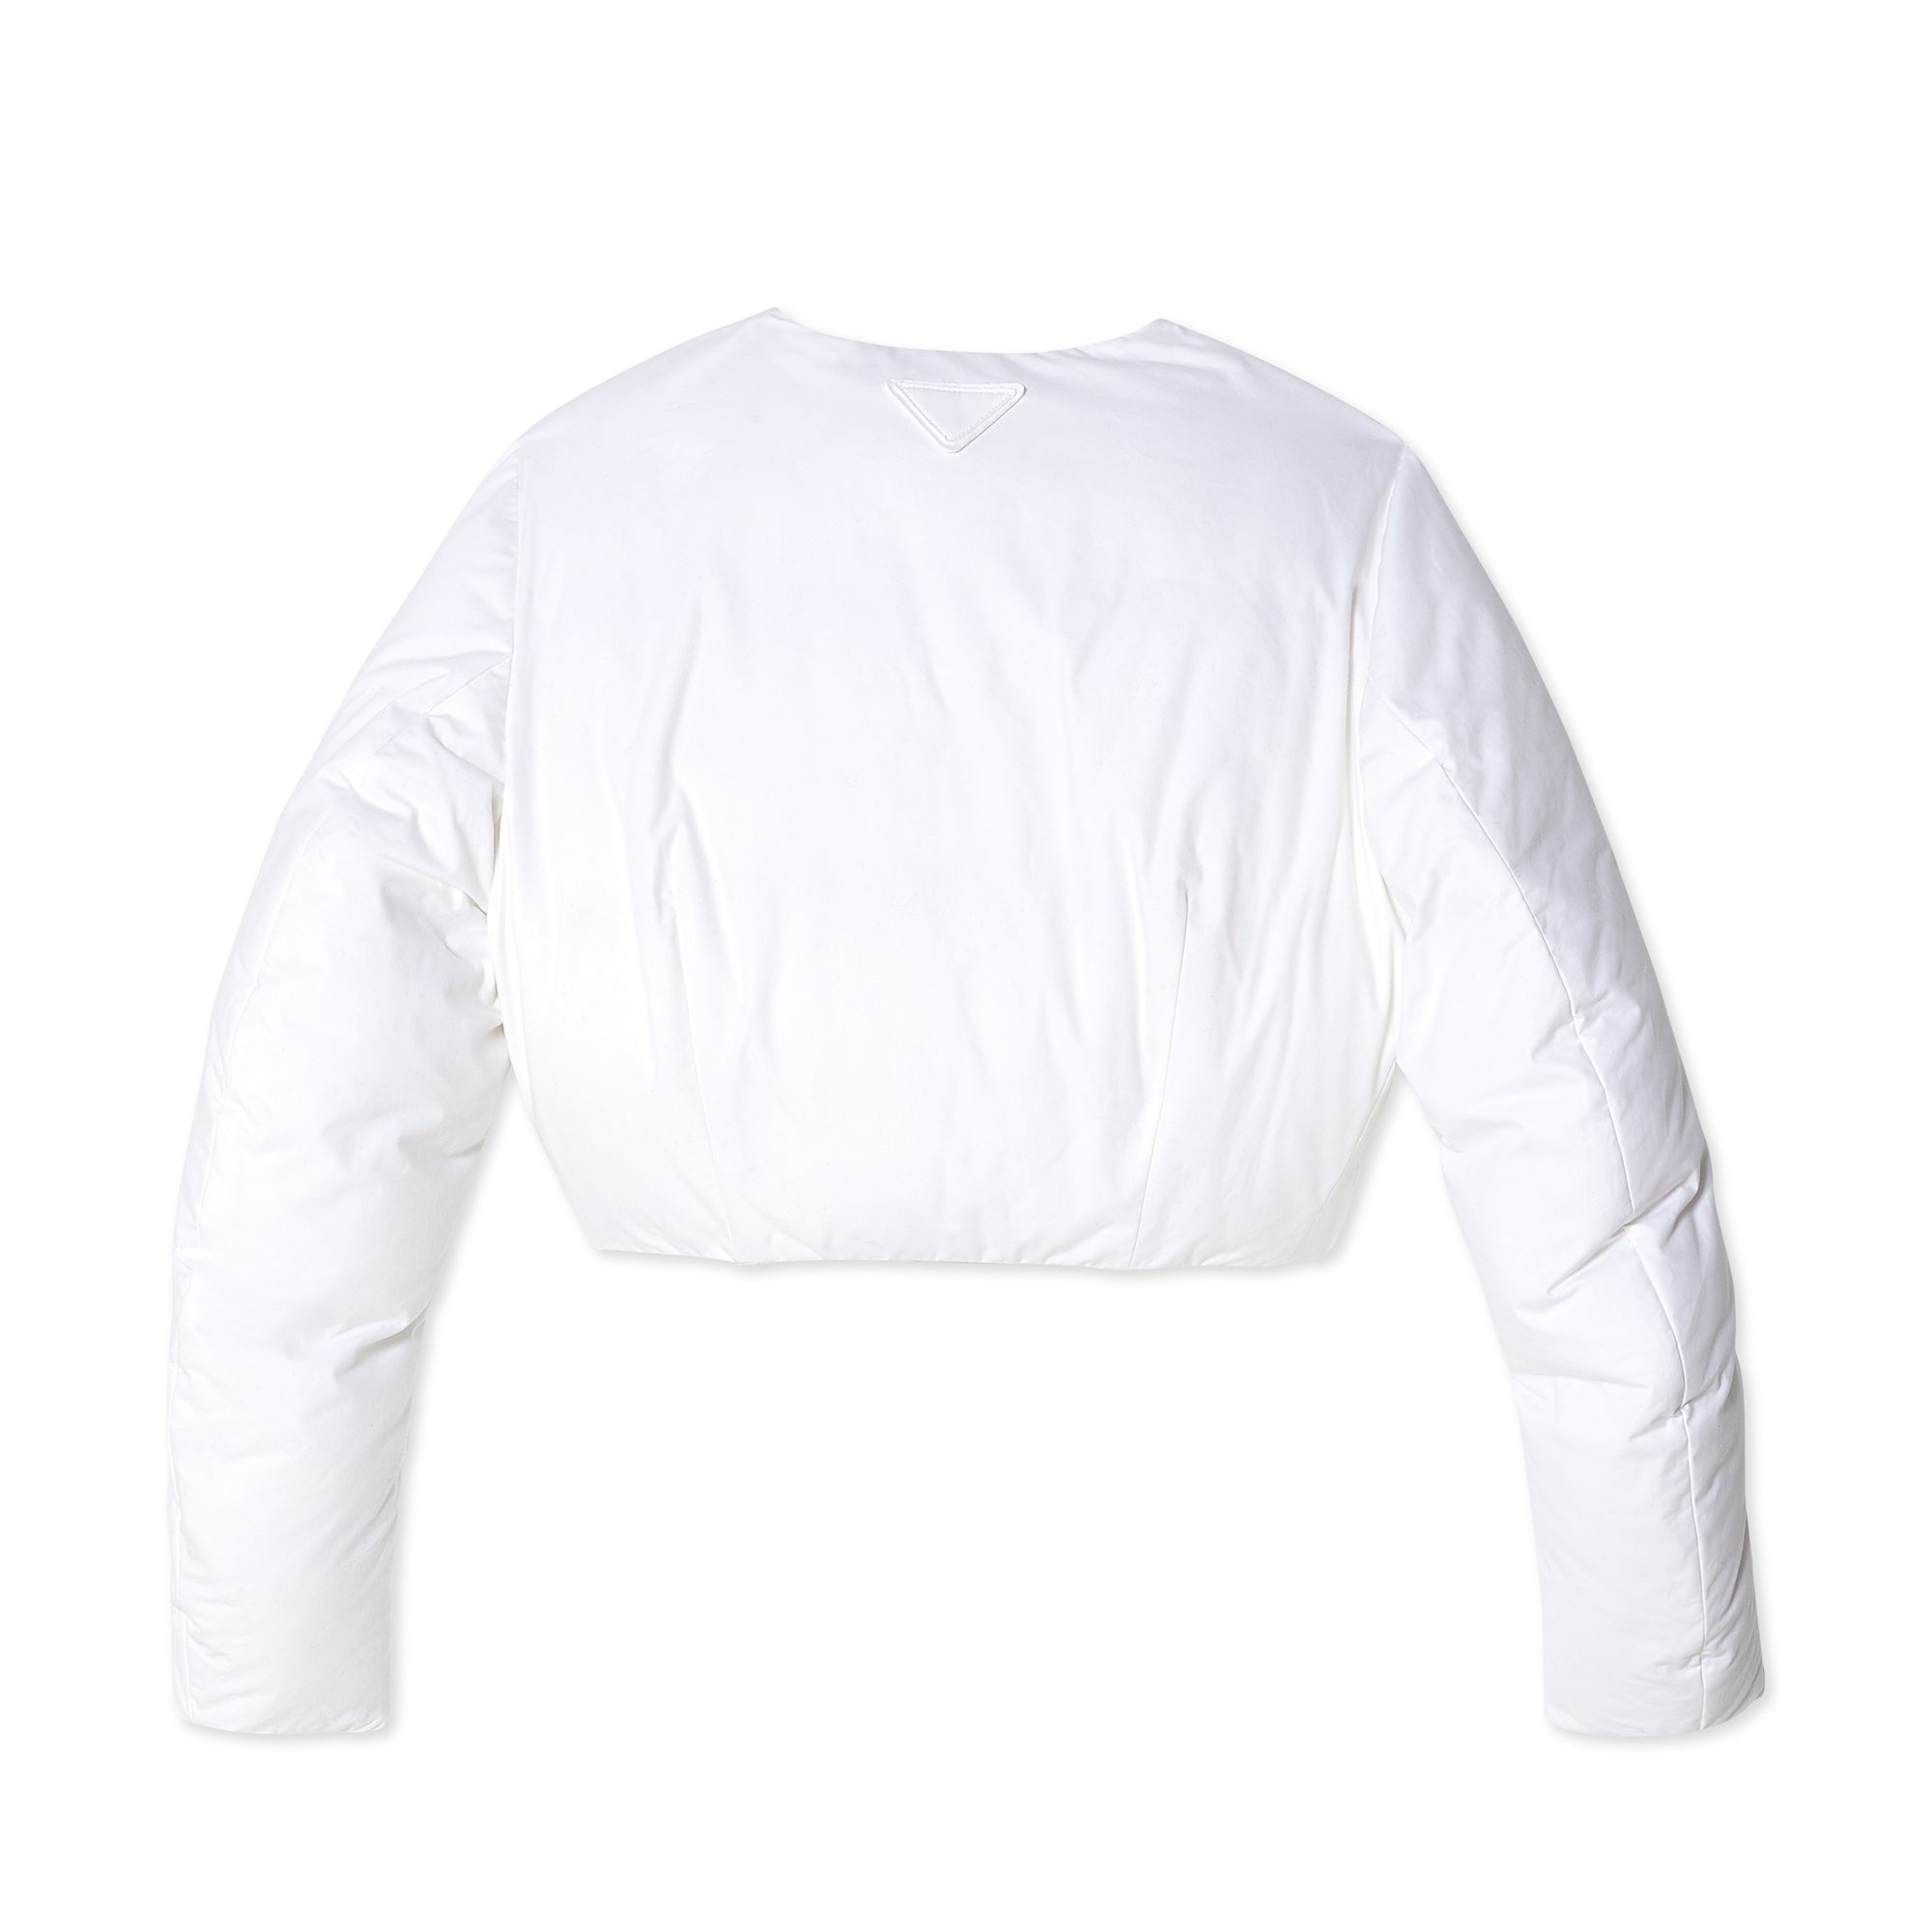 Prada - Women's Cotton Down Jacket - (White/Cream) view 2